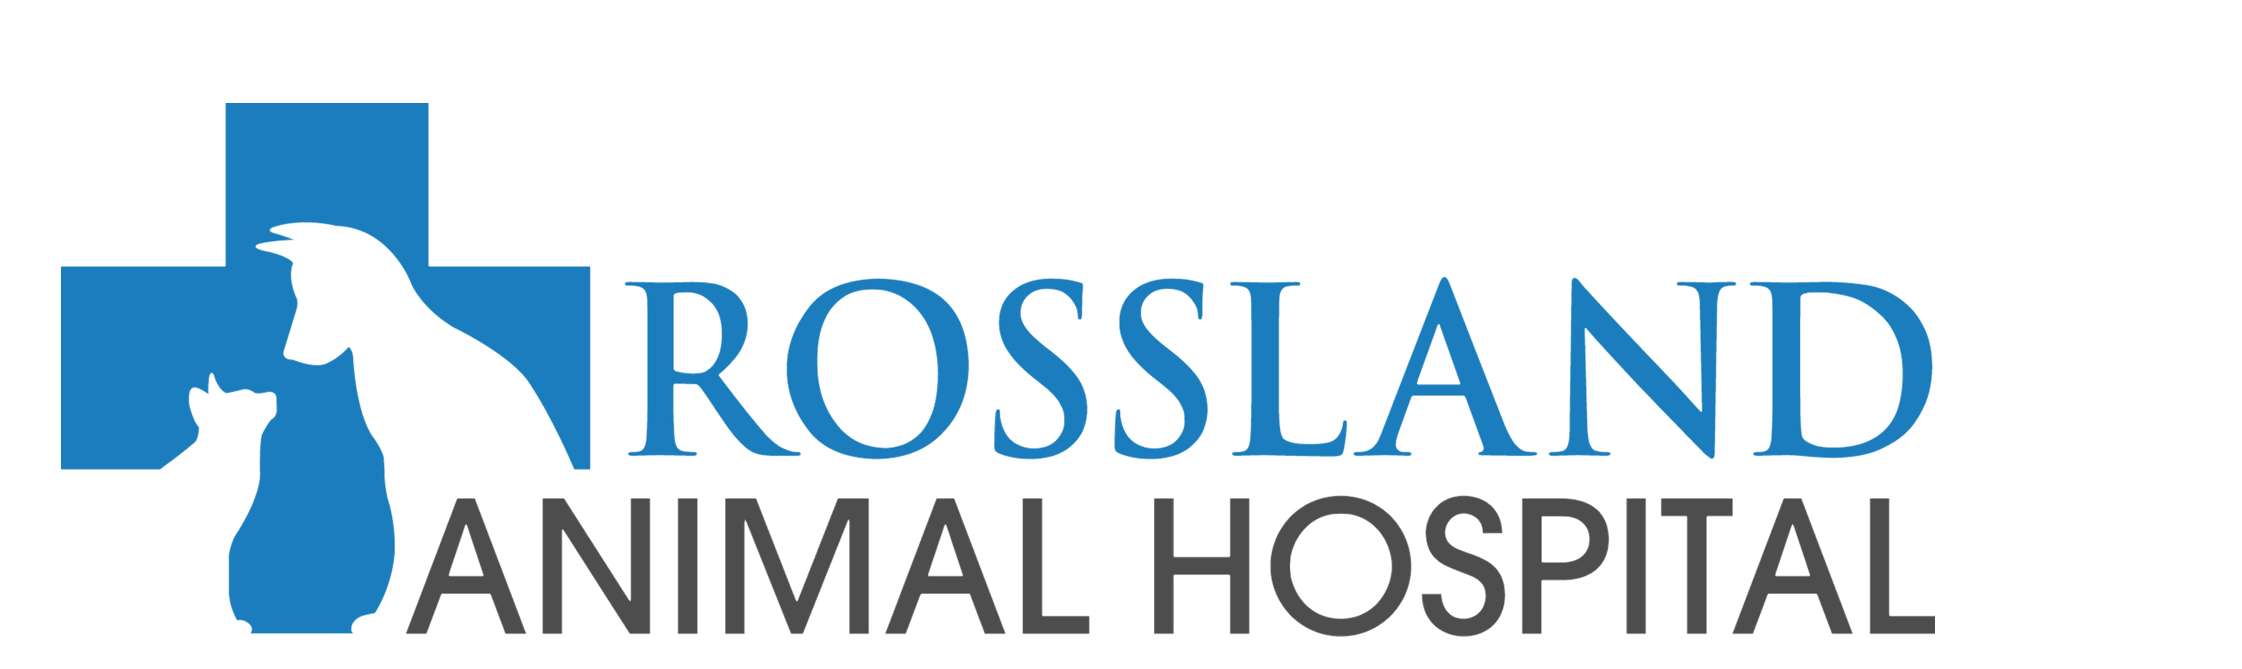 Animal Hospital Logo - Rossland Animal Hospital Oshawa